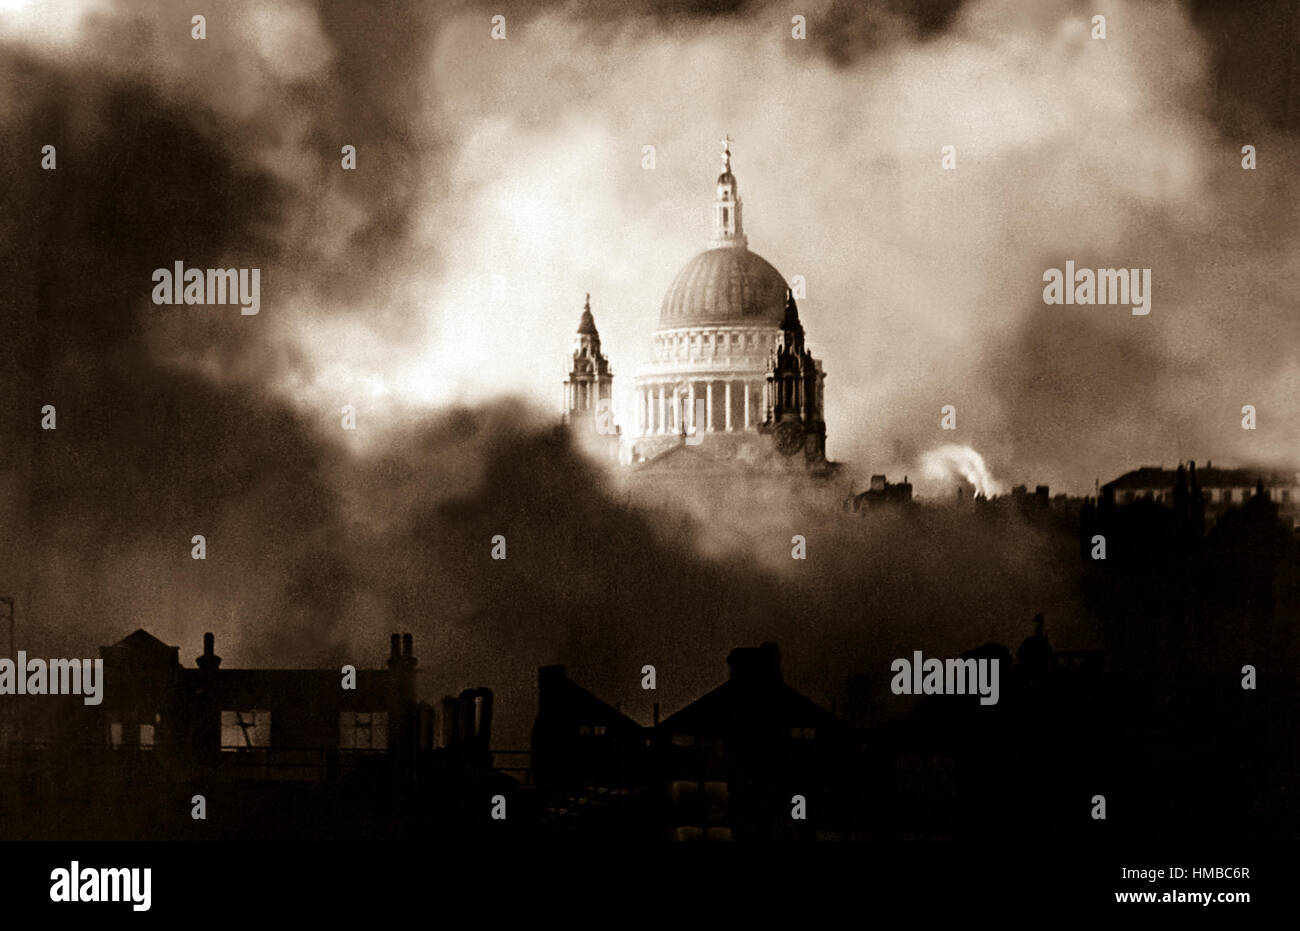 Debout dans la gloire des flammes et de la fumée des bâtiments environnants, la Cathédrale St Paul est photographié pendant le grand incendie de raid Dimanche 29 Décembre. Londres, 1940. Banque D'Images